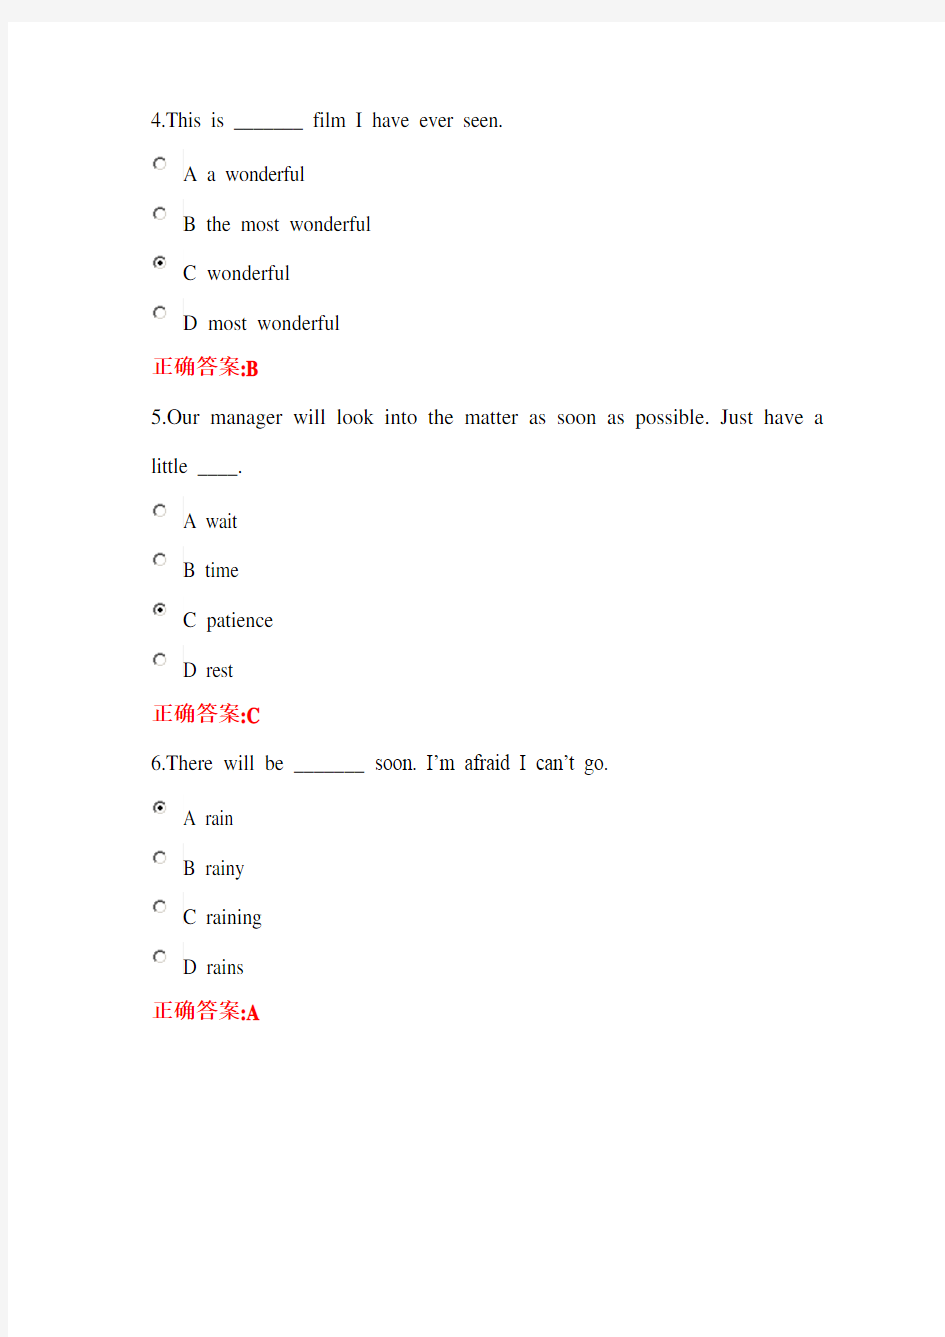 浙大远程英语(1)在线作业1-6答案